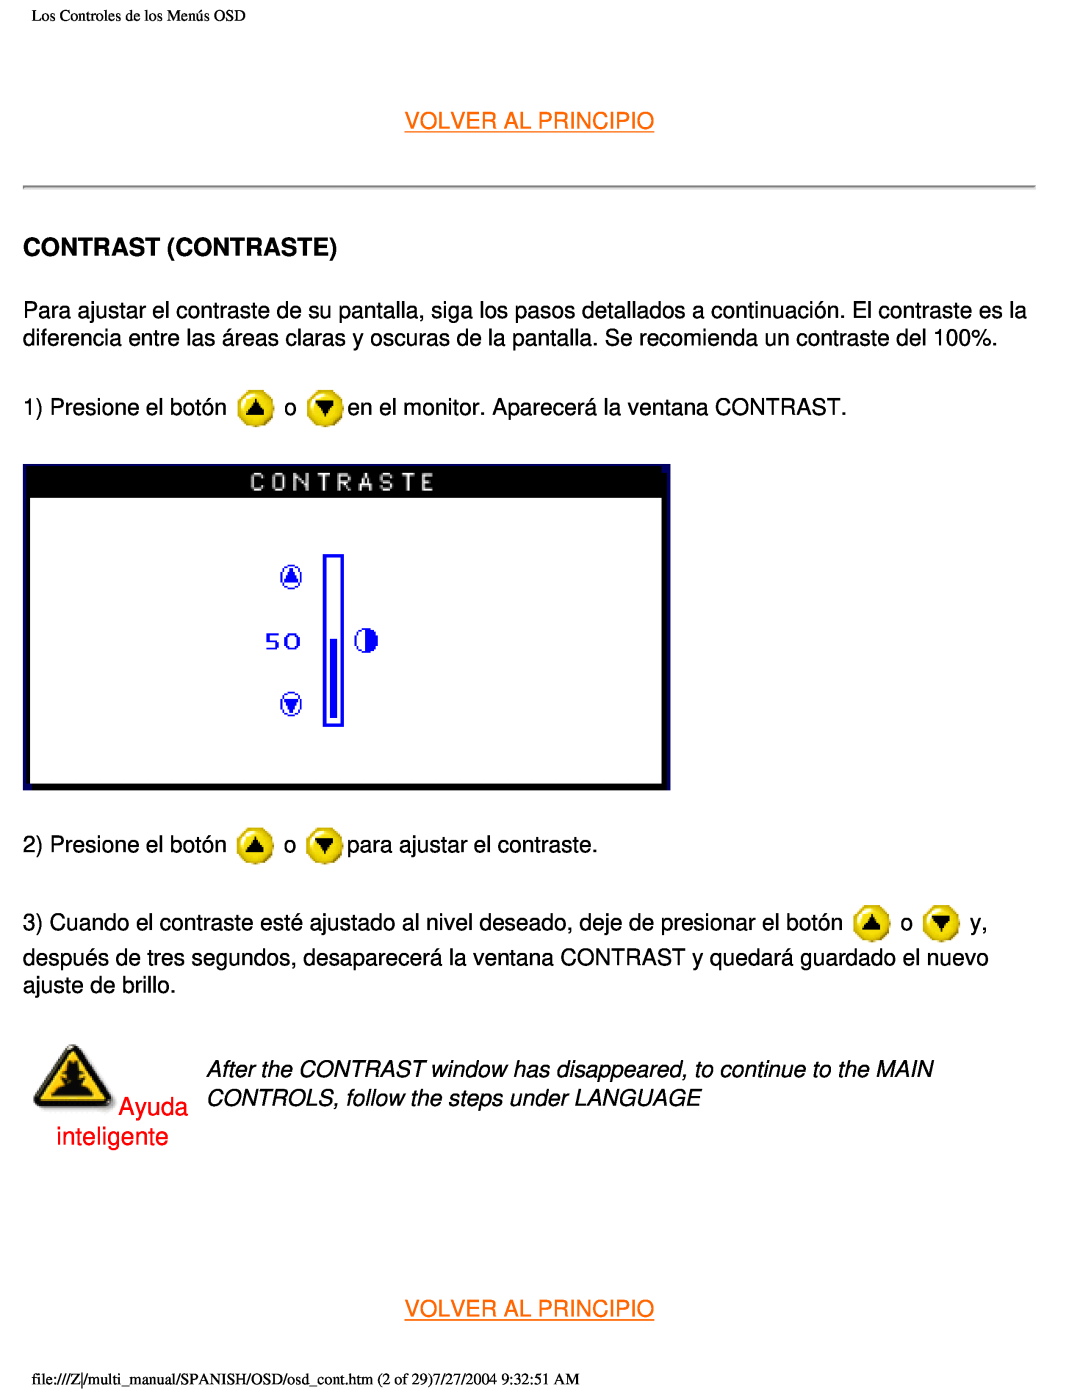 Philips 107B user manual Contrast Contraste, inteligente, Volver Al Principio 